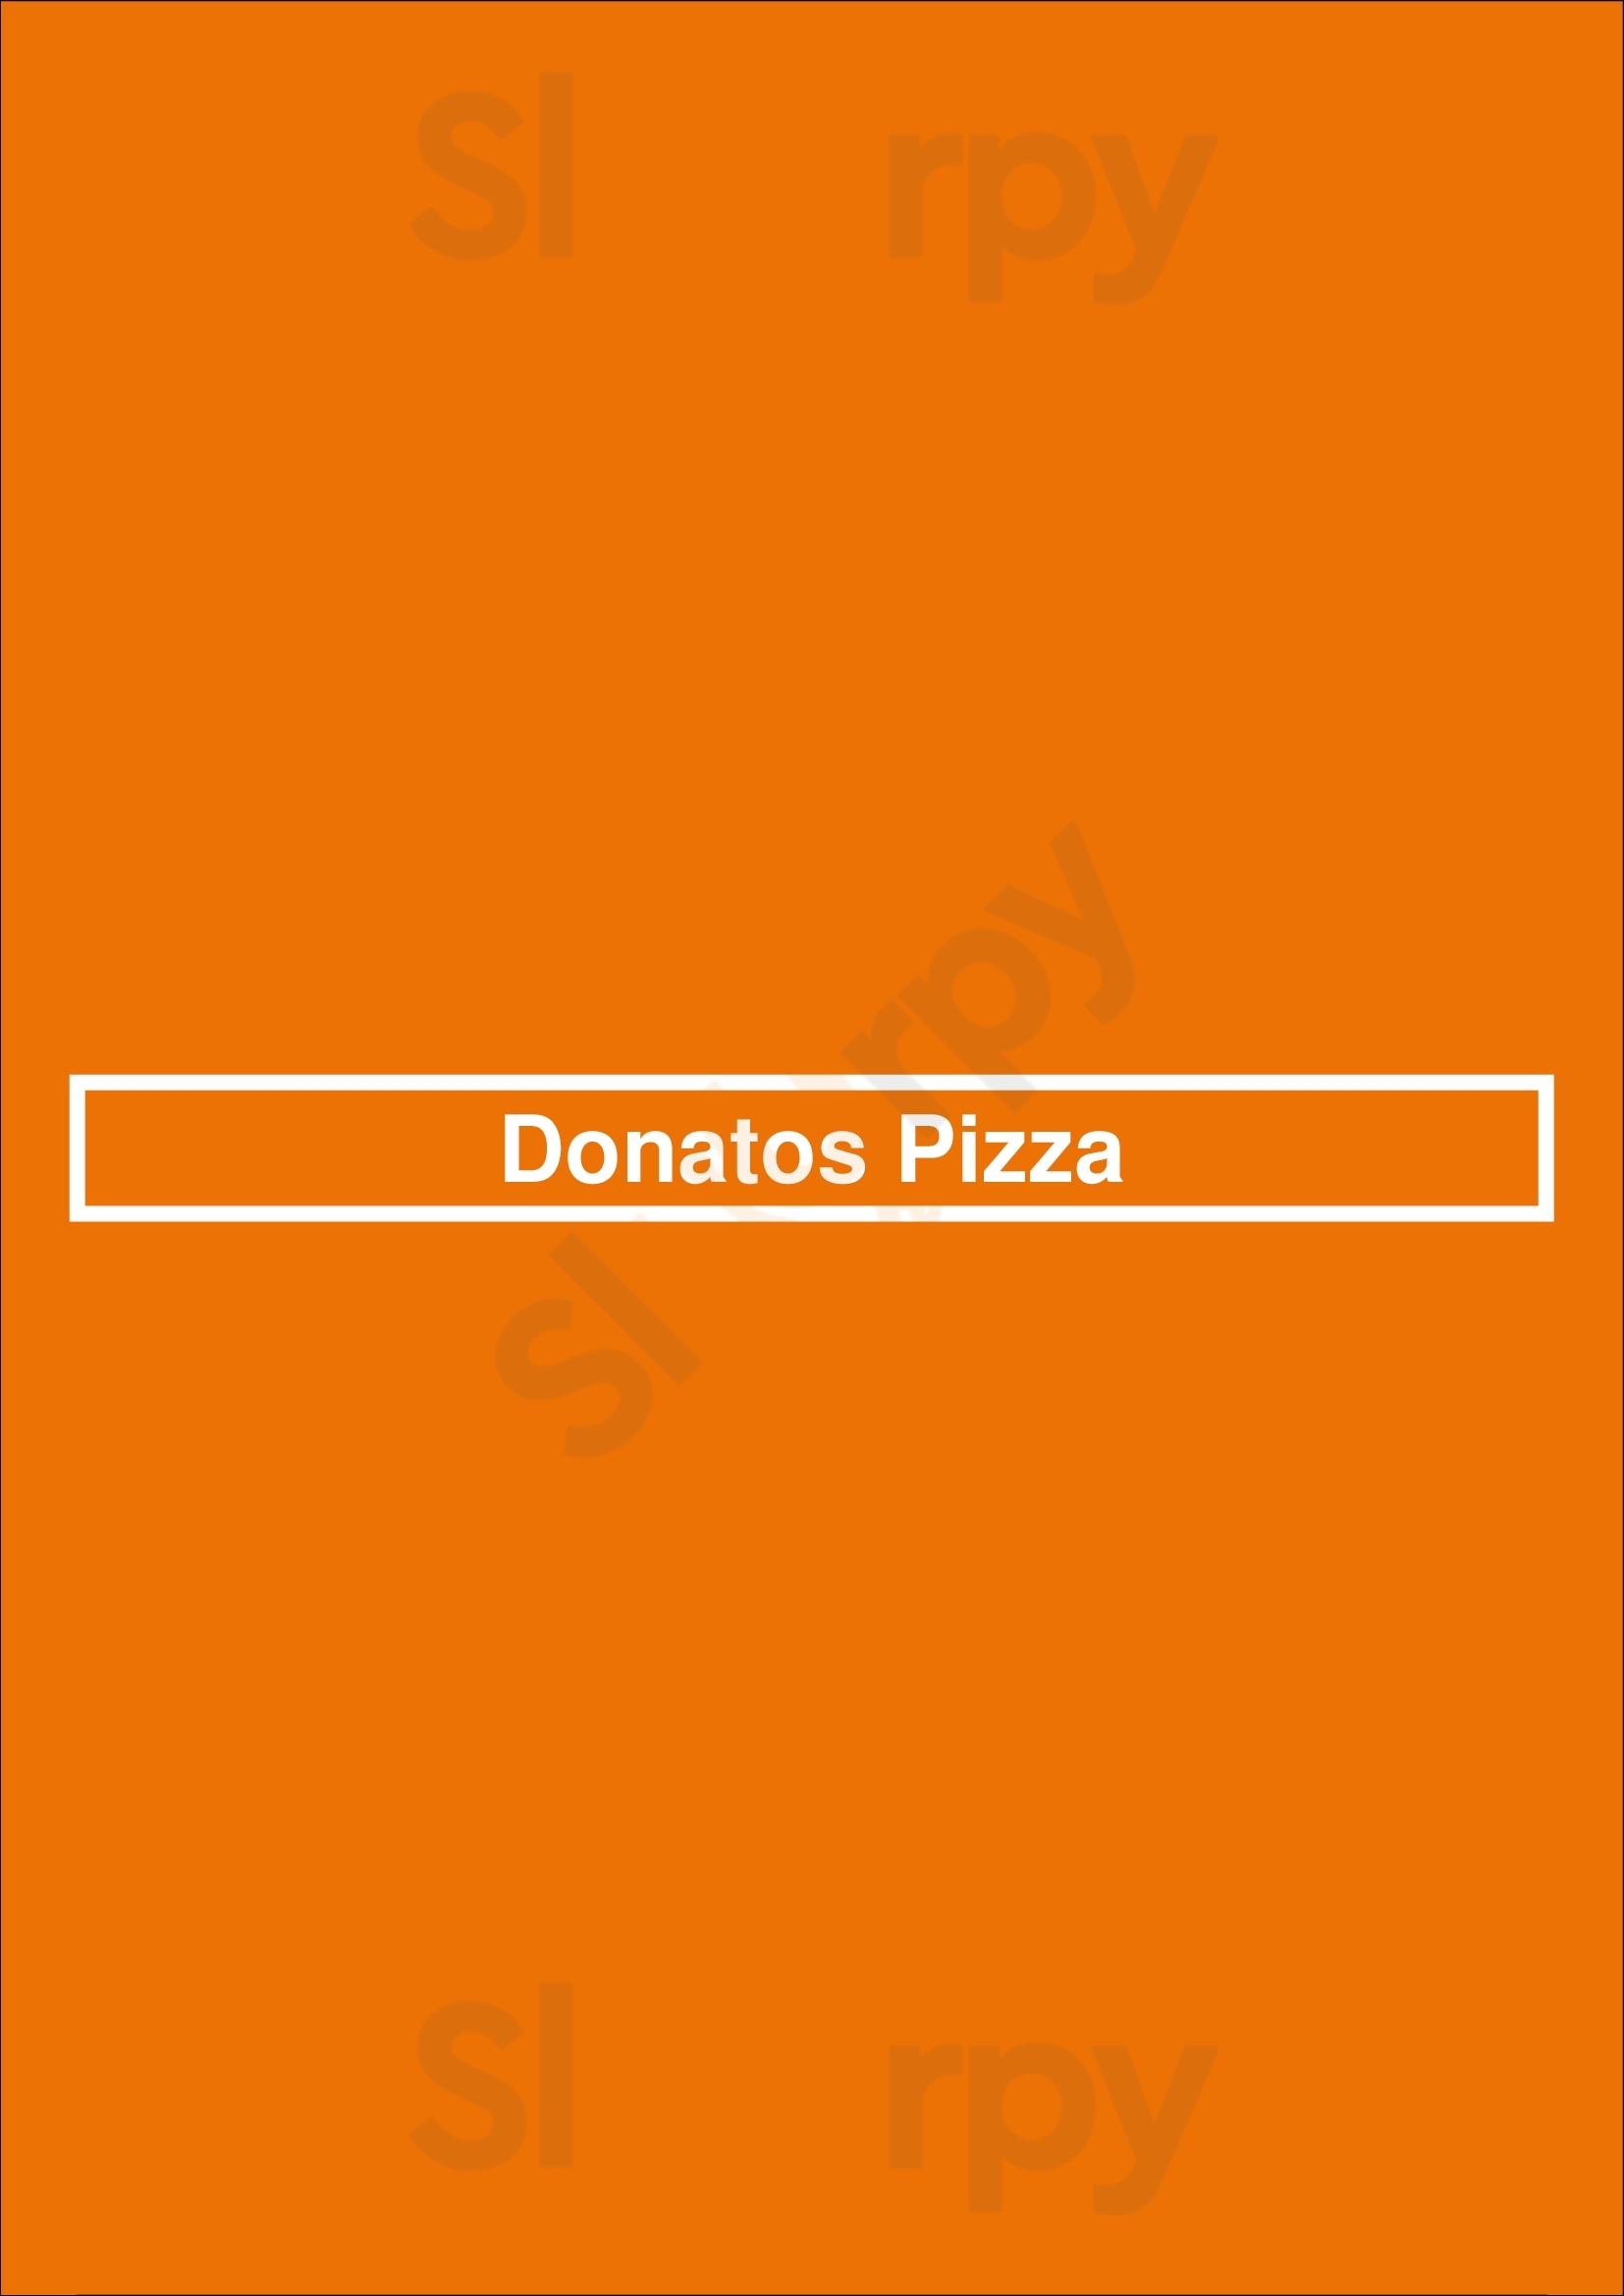 Donatos Pizza Cincinnati Menu - 1